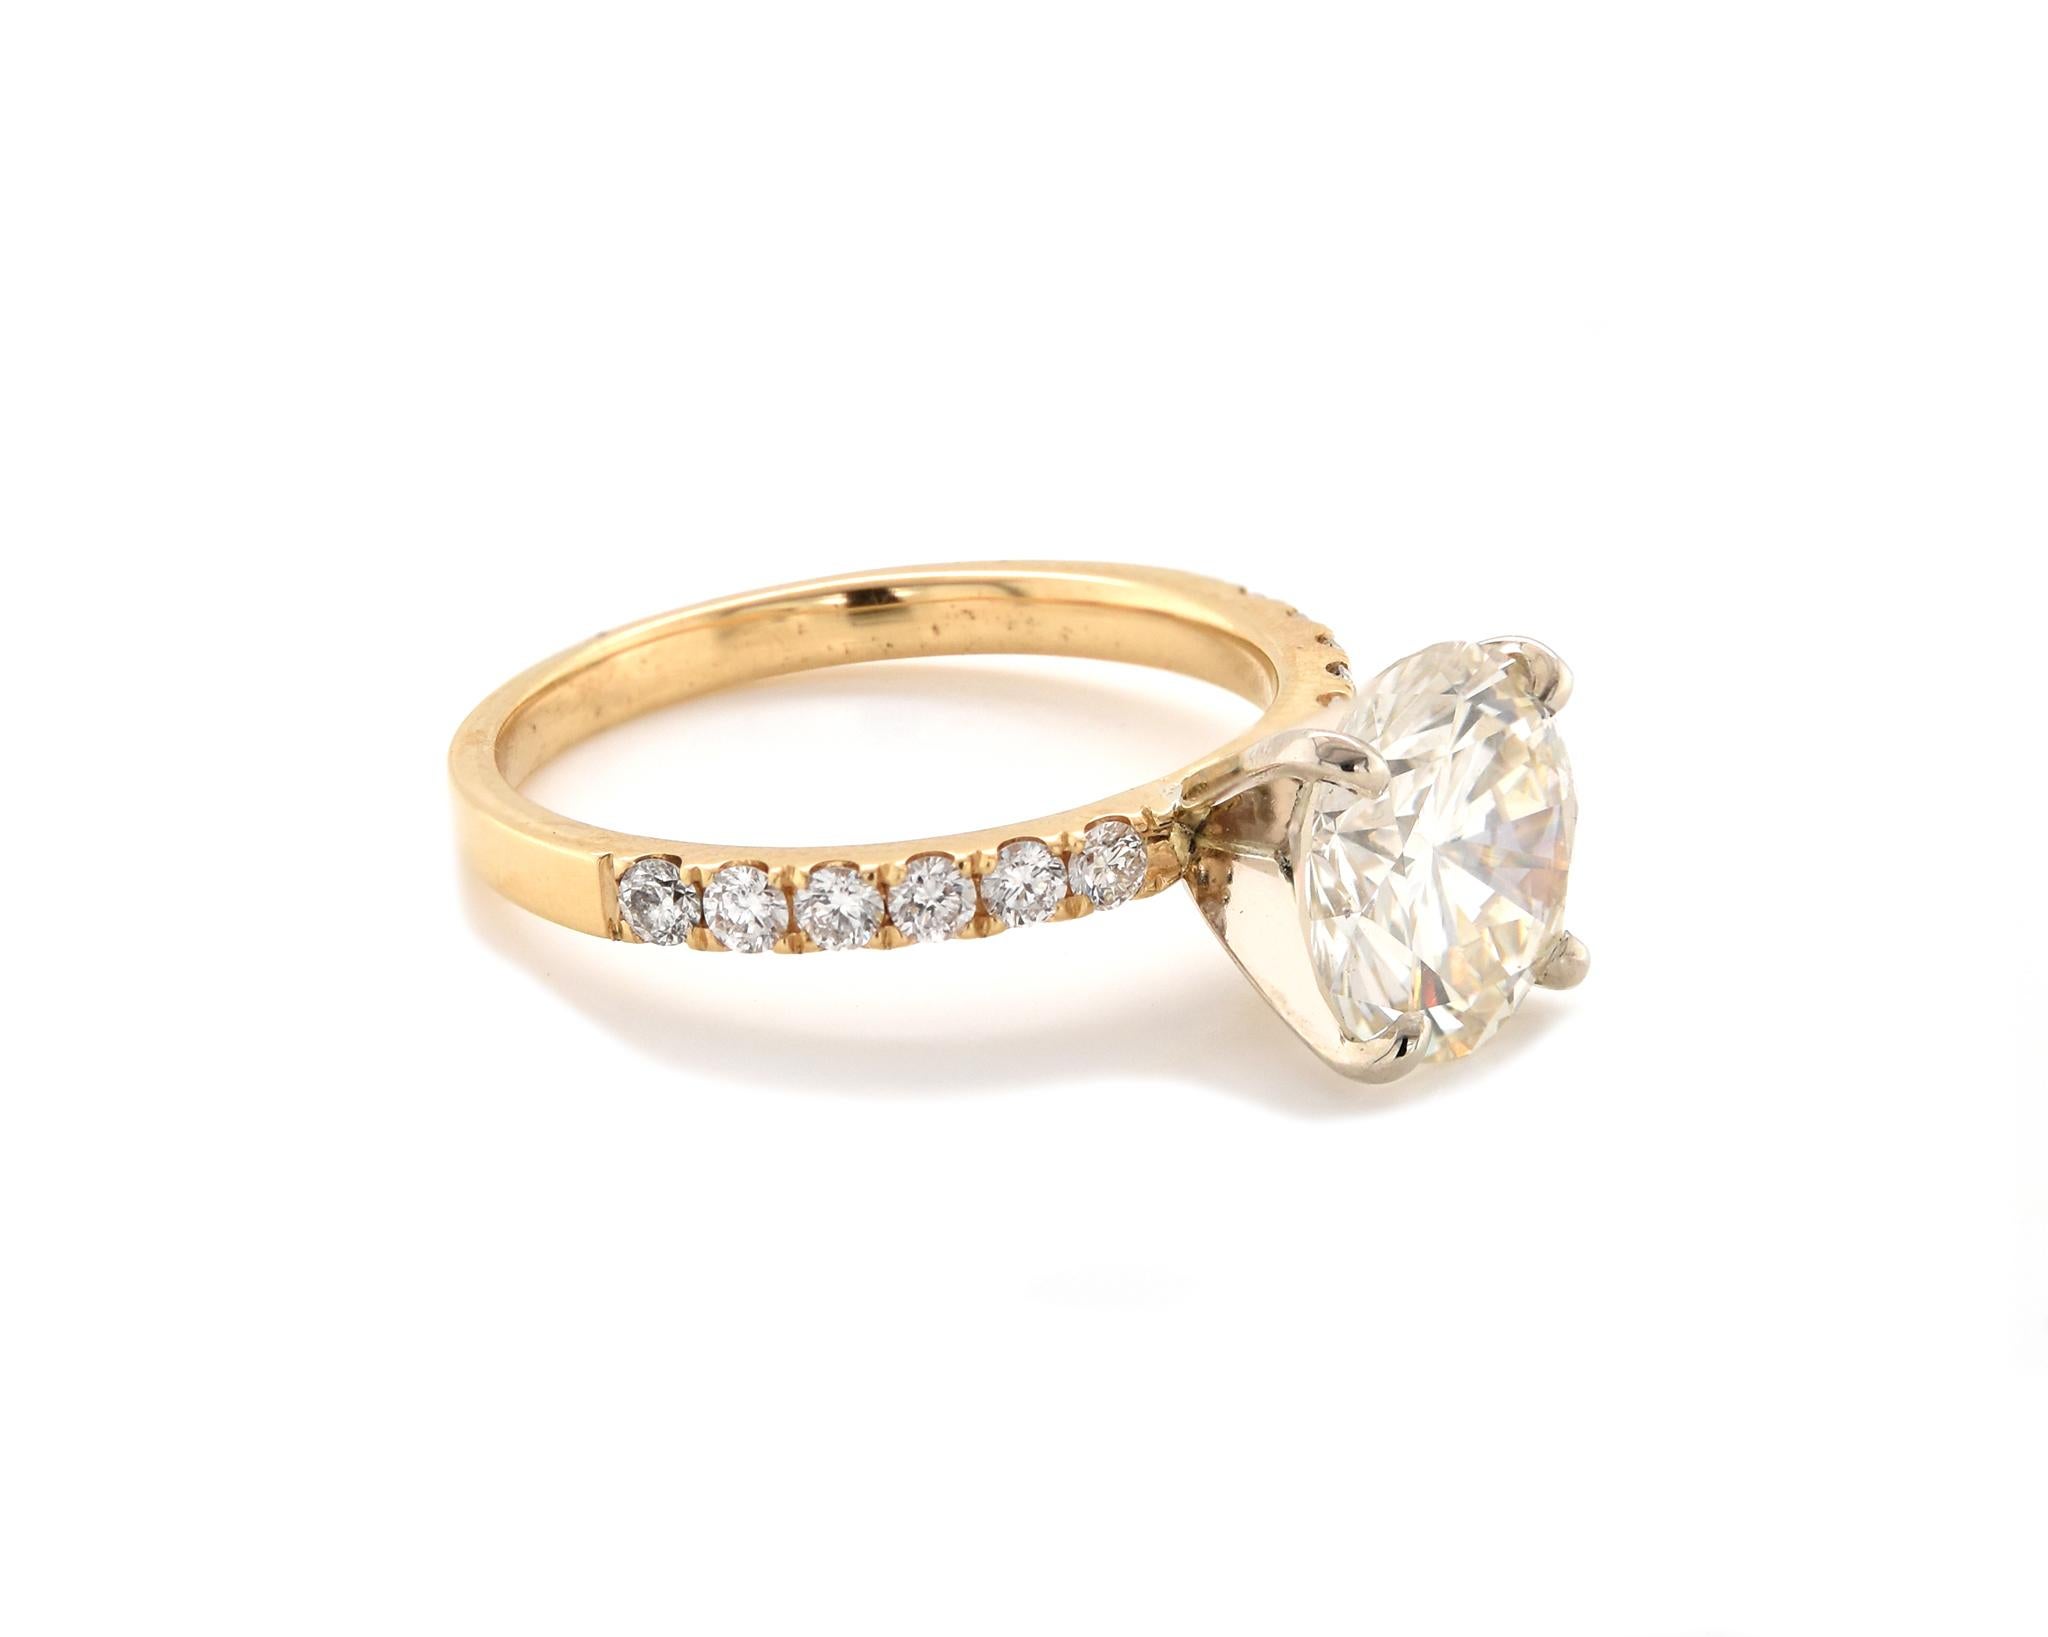 18 karat gold engagement ring